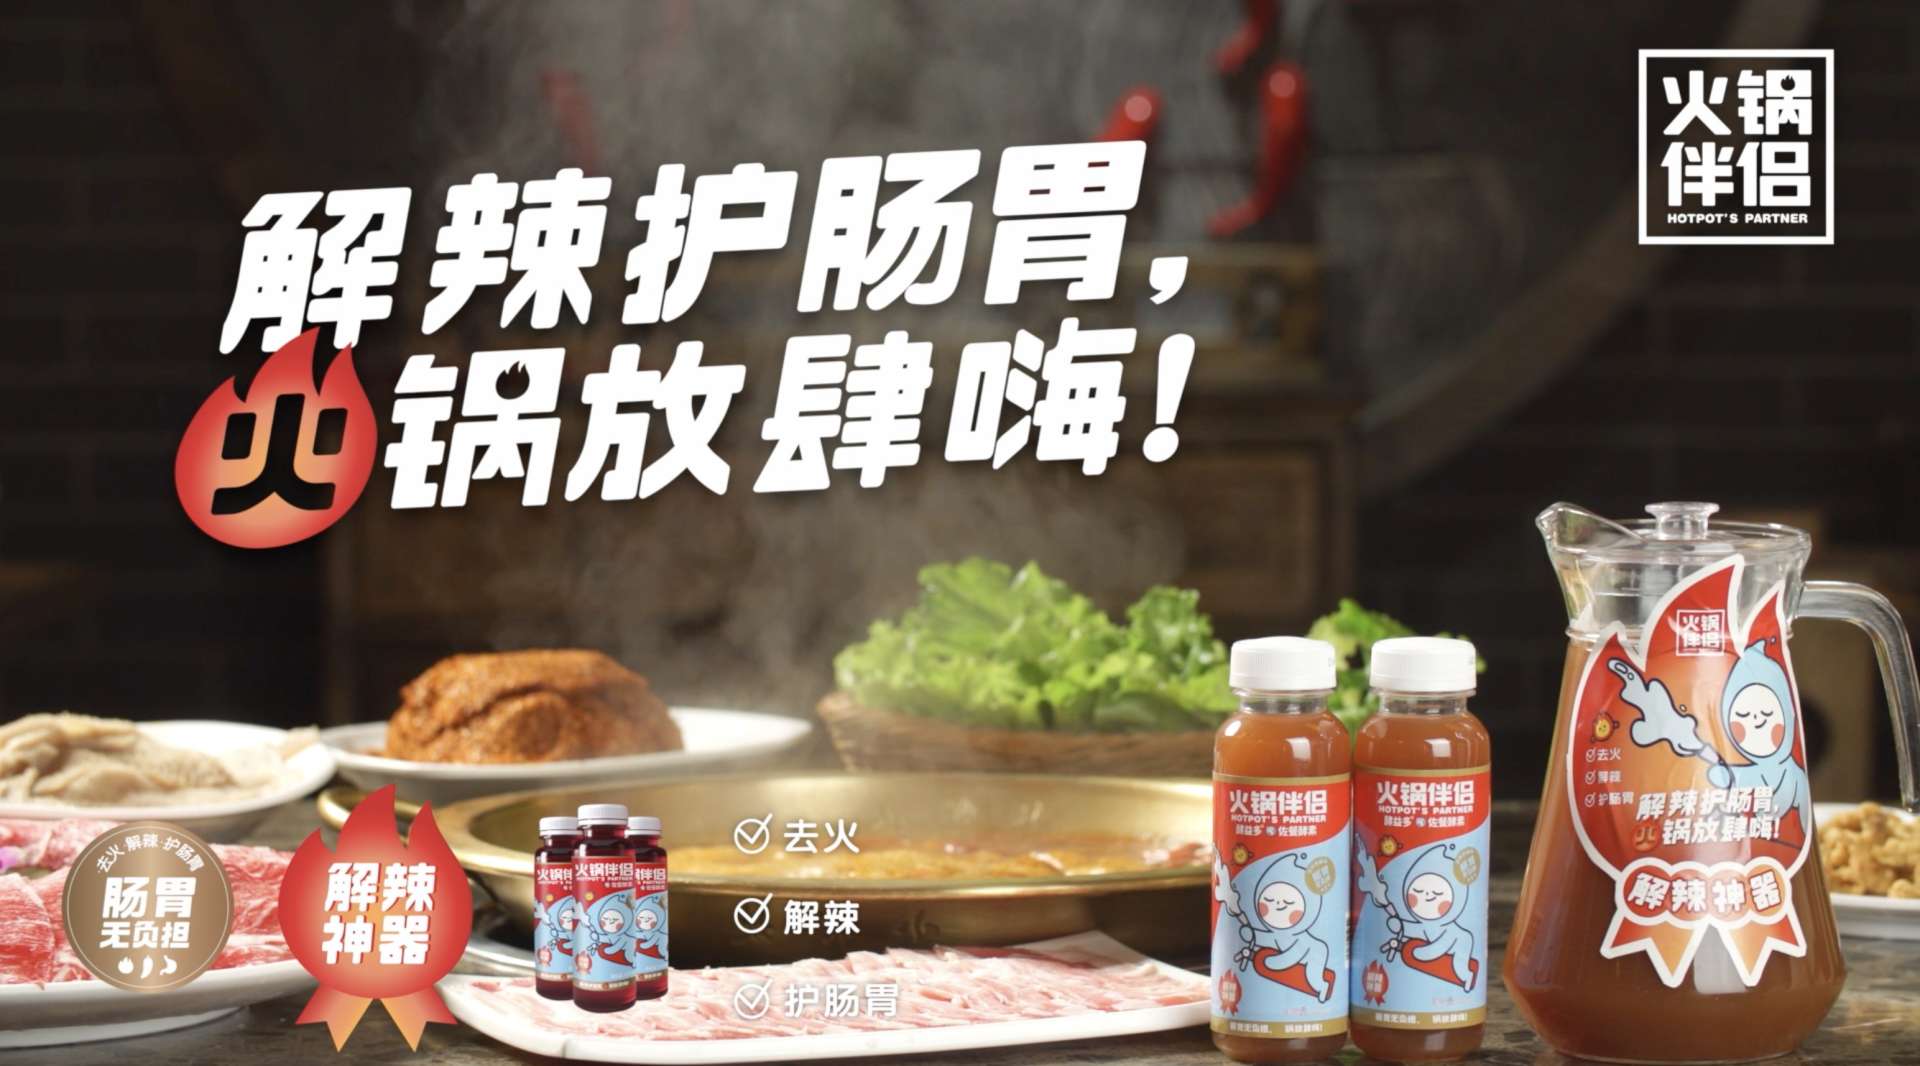 美食视频——火锅伴侣山楂果蔬汁酵素